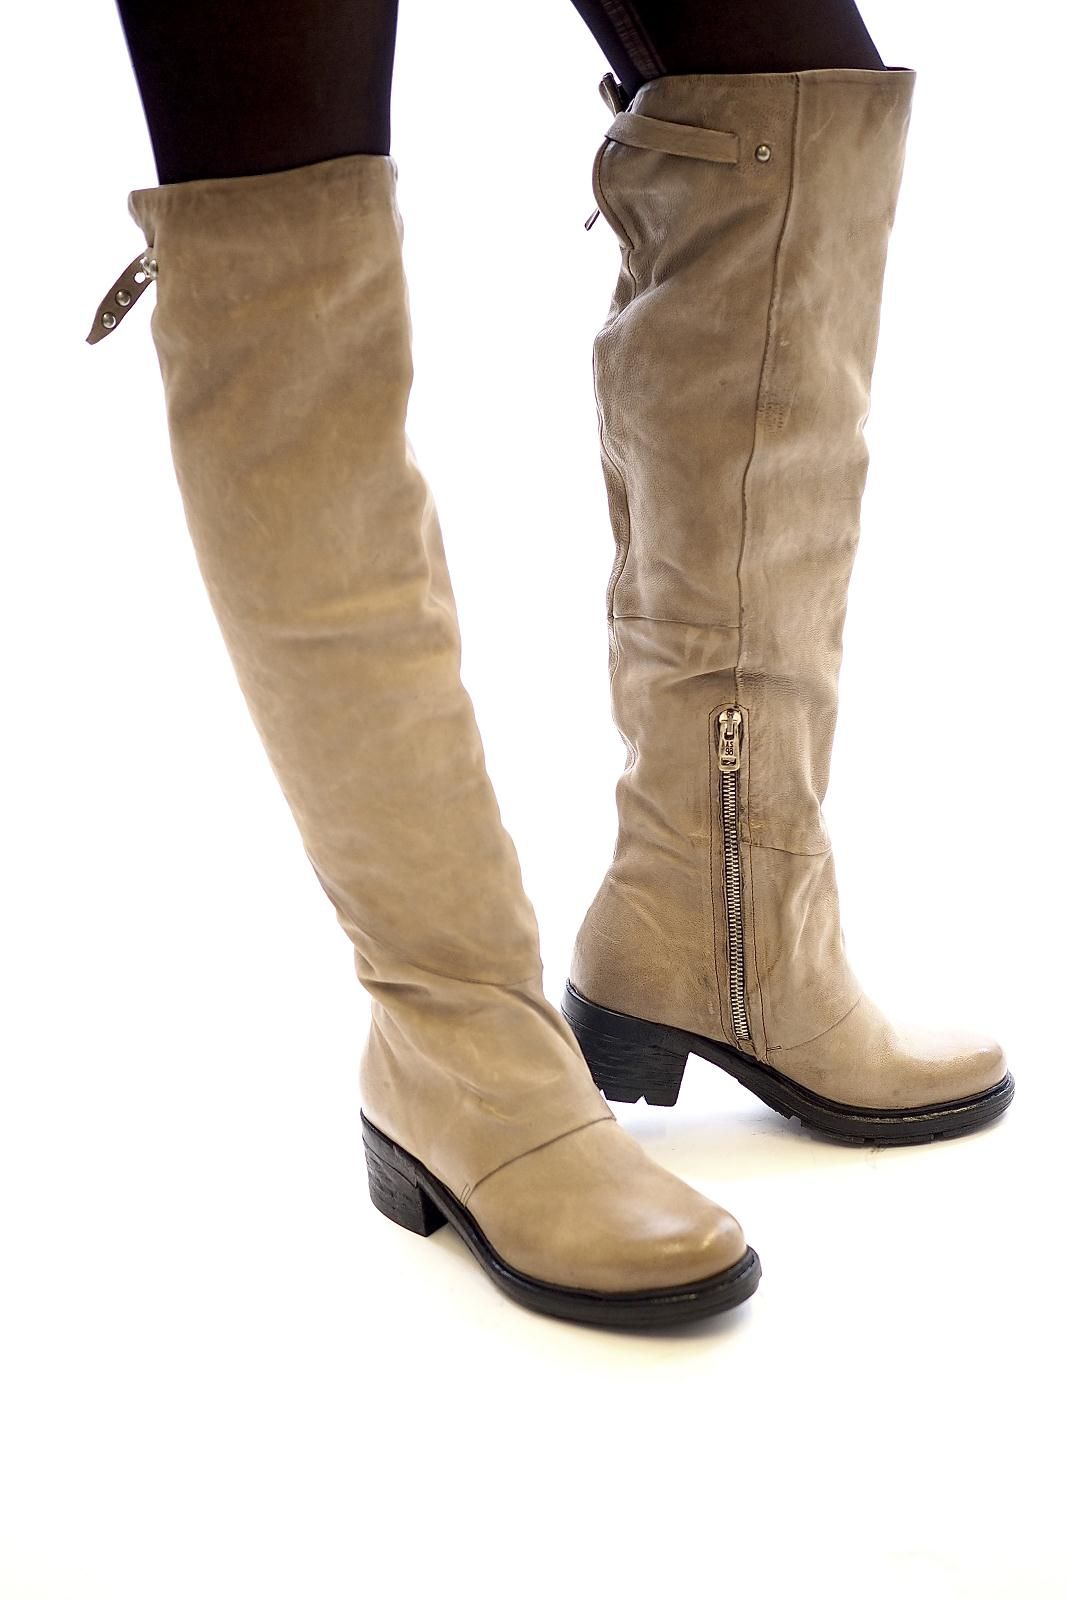 Bottines pour femme/ -/ Chelsea Boots Bottes en caoutchouc imprim/é Animal/ - Talon bloc Chaussures avec motifs Bottines brillantes en caoutchouc par Flandell